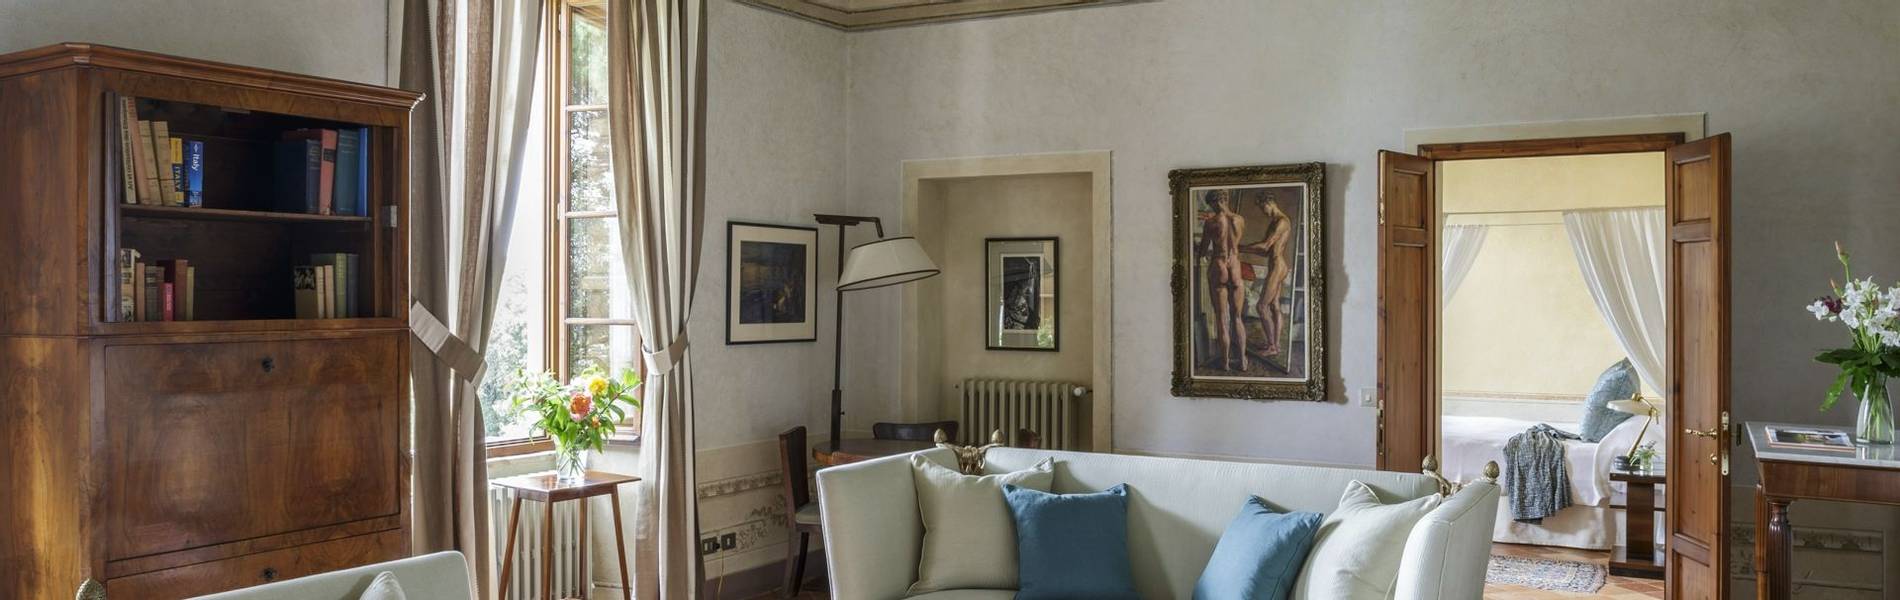 05.Borgo Pignano - Villa Suite Marchese Living Room.jpg